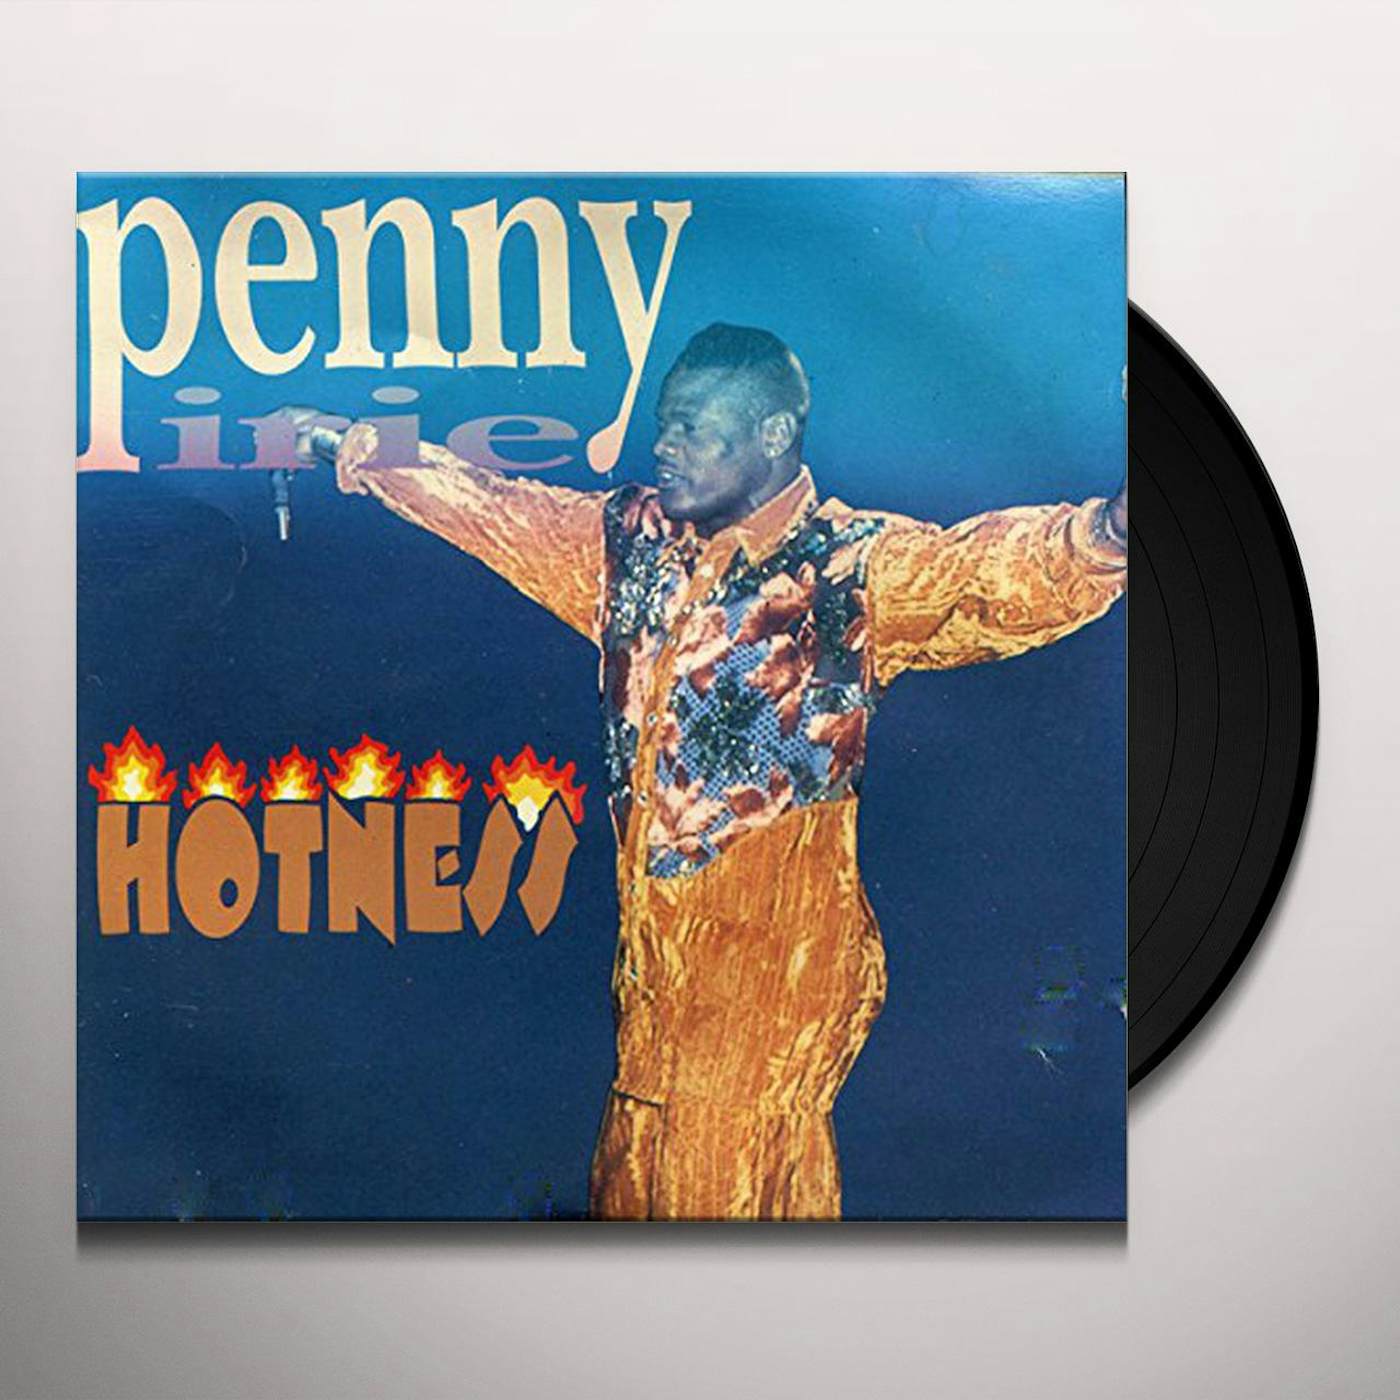 Penny Irie HOTNESS Vinyl Record